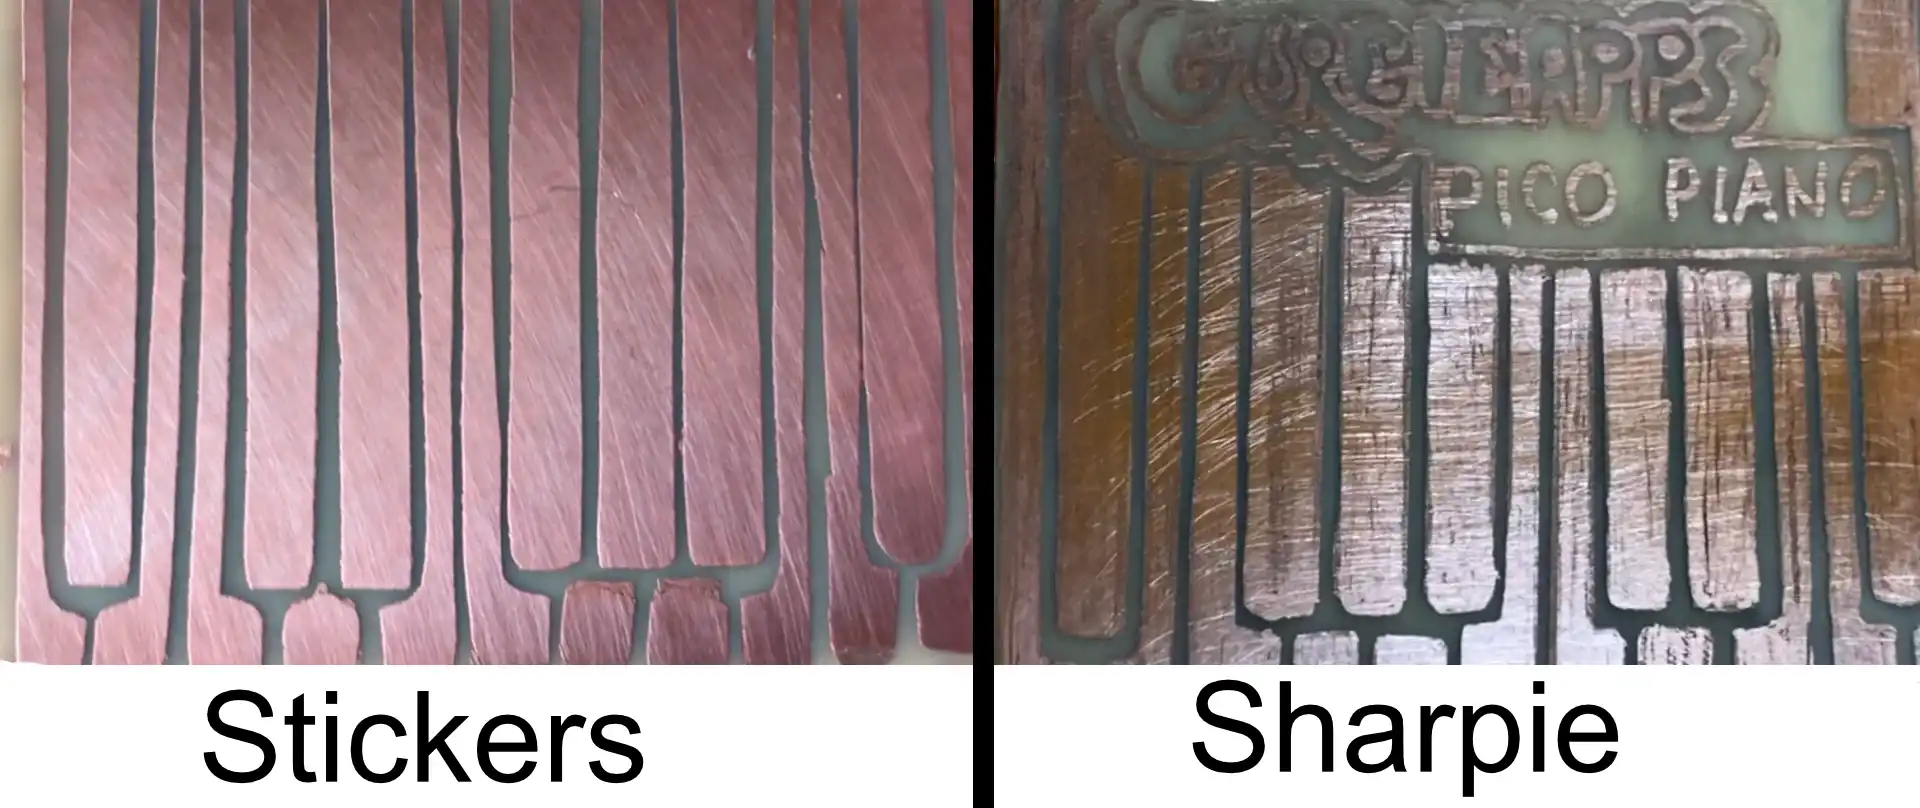 pico piano sharpie vs sticker comparison